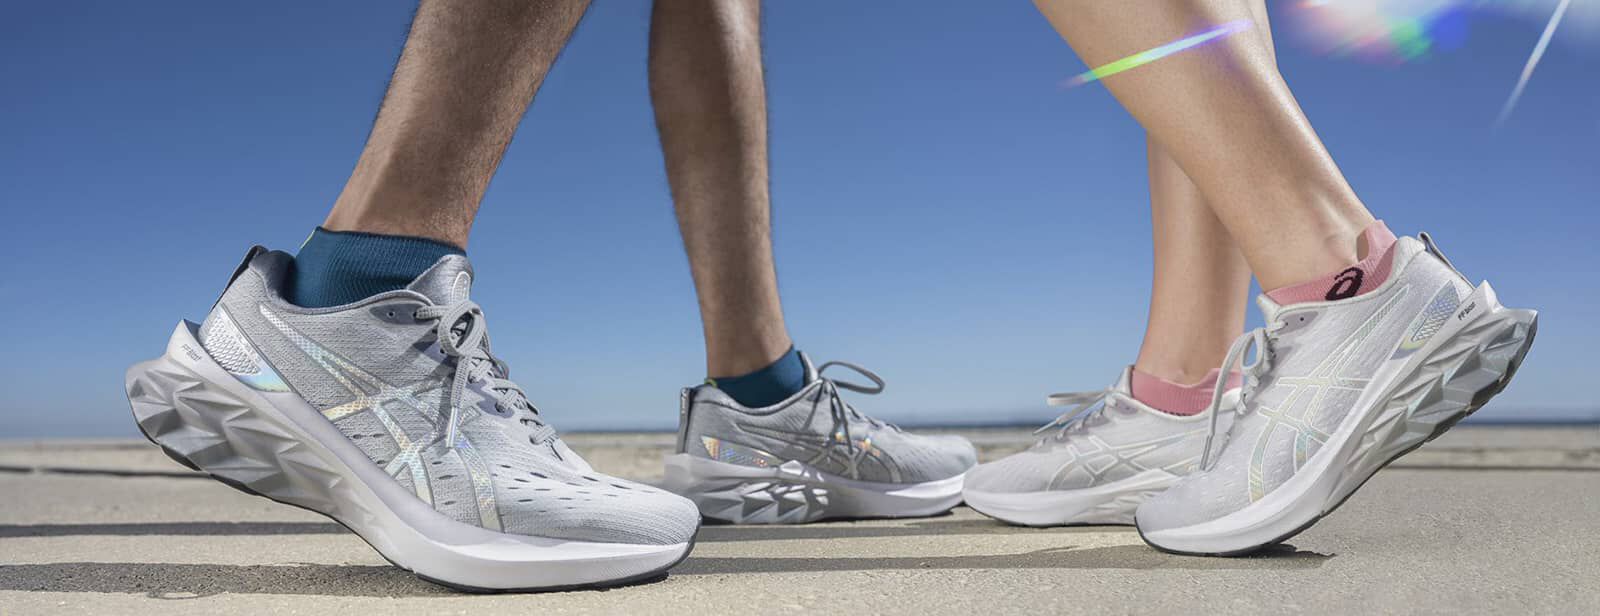 Come pulire le scarpe da running | ASICS